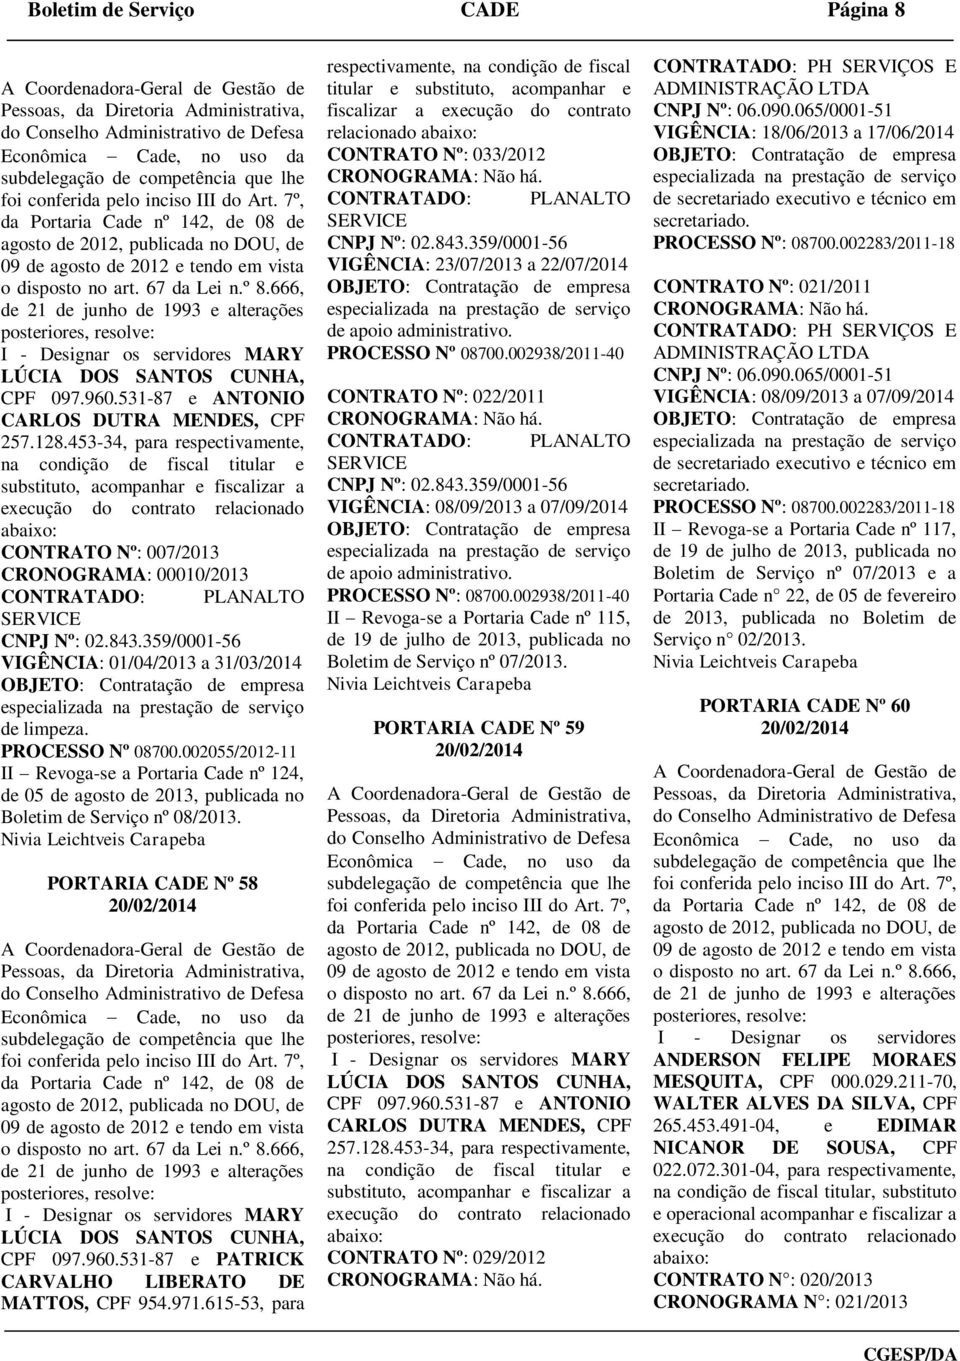 002055/2012-11 II Revoga-se a Portaria Cade nº 124, de 05 de agosto de 2013, publicada no Boletim de Serviço nº 08/2013.